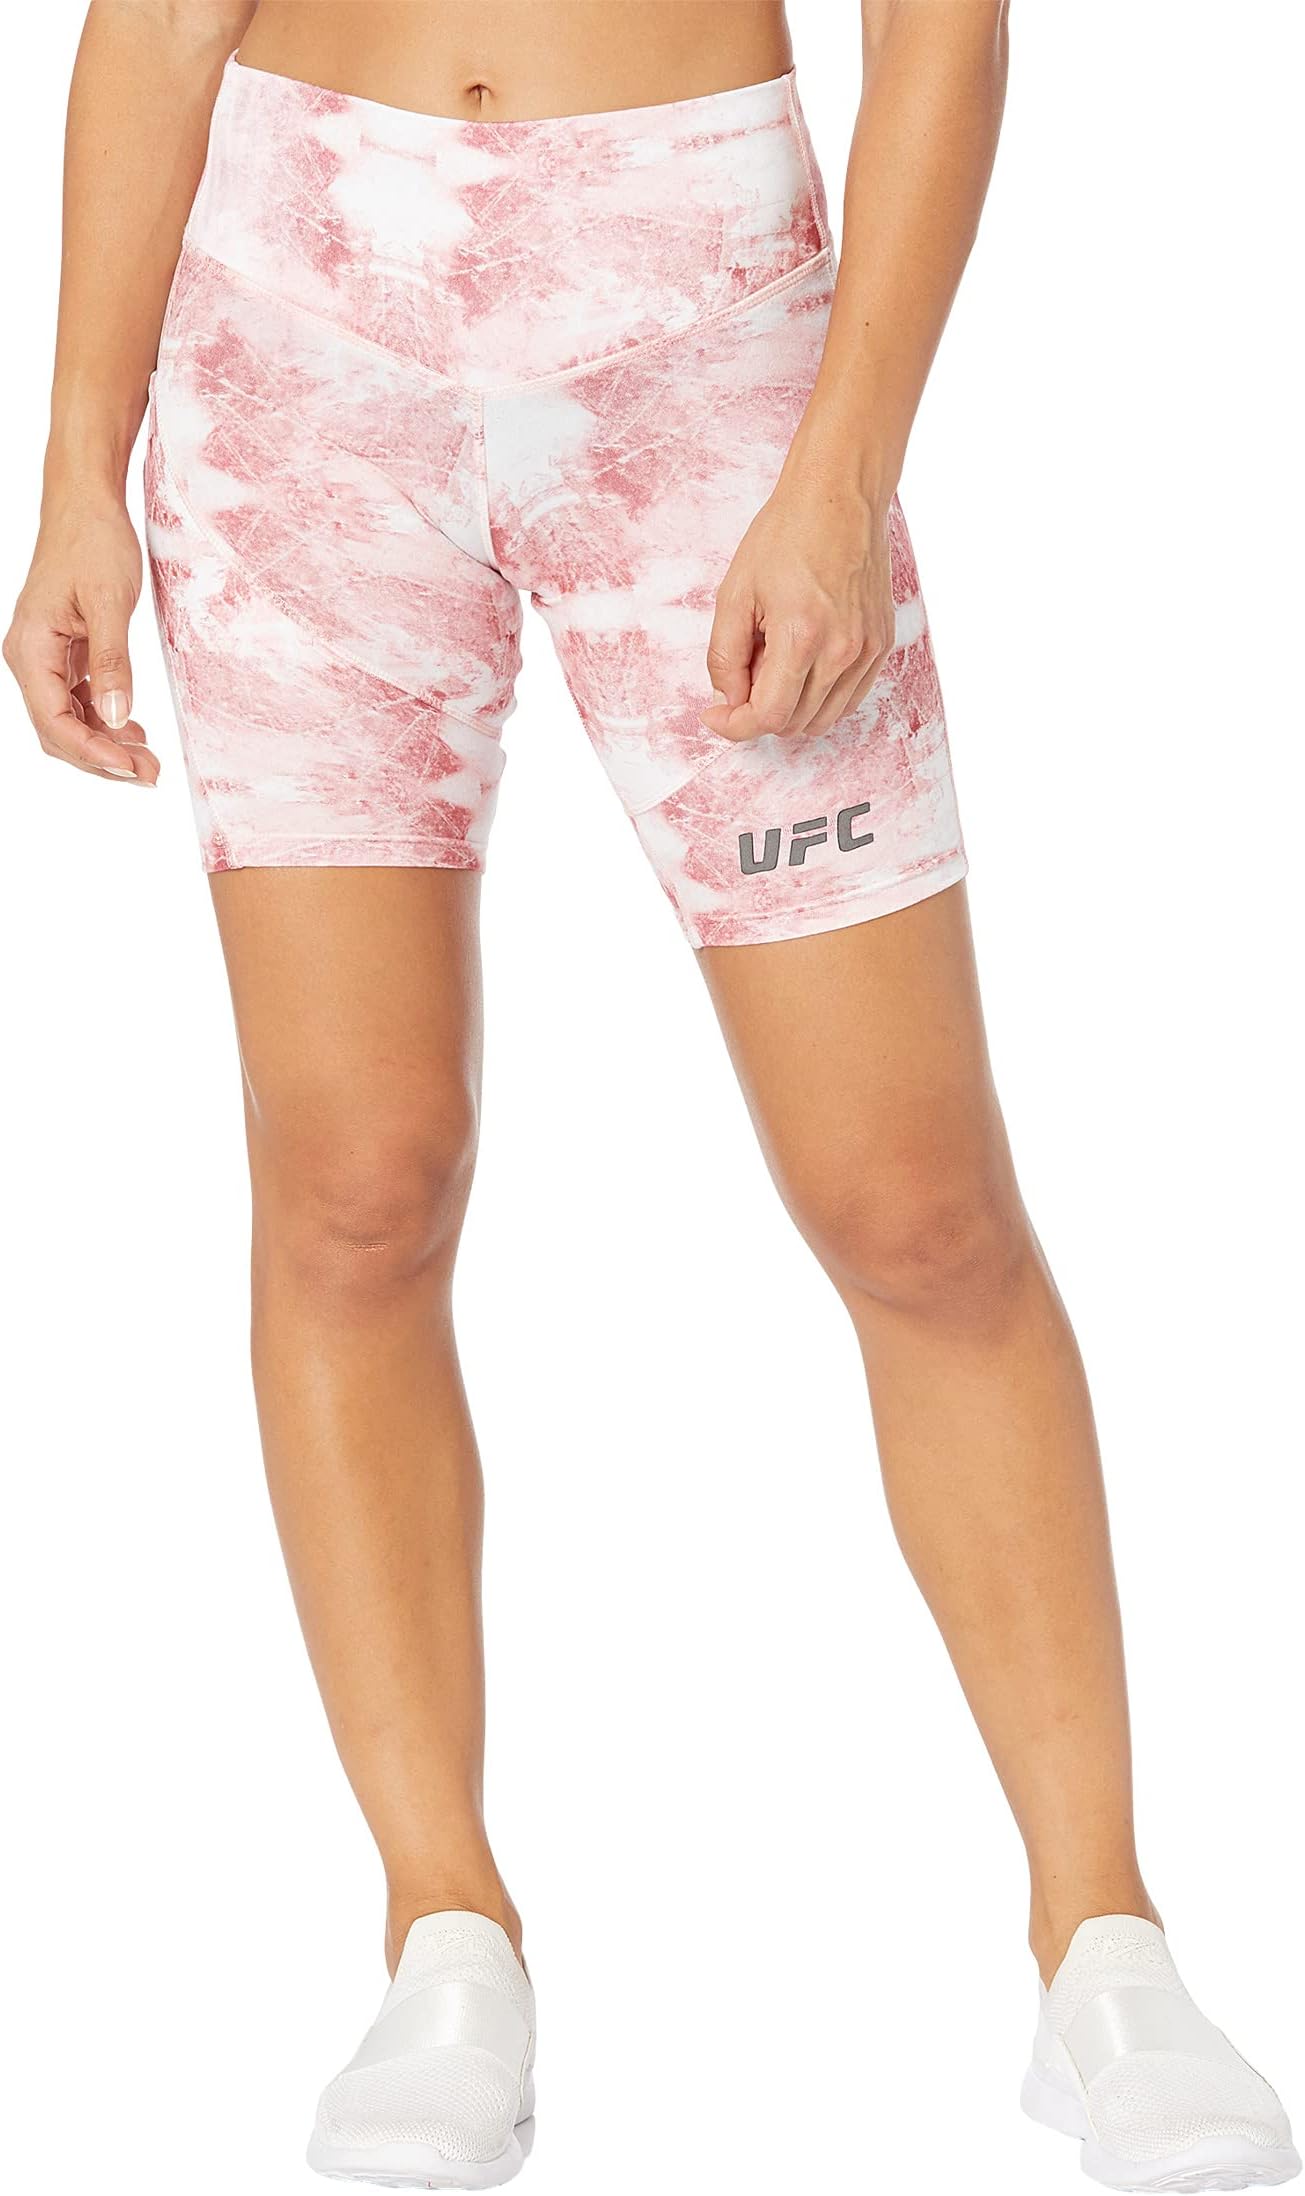 Шорты для экстремальных тренировок 9 дюймов с кварцевым принтом UFC, цвет Blushing Rose blushing rose medley